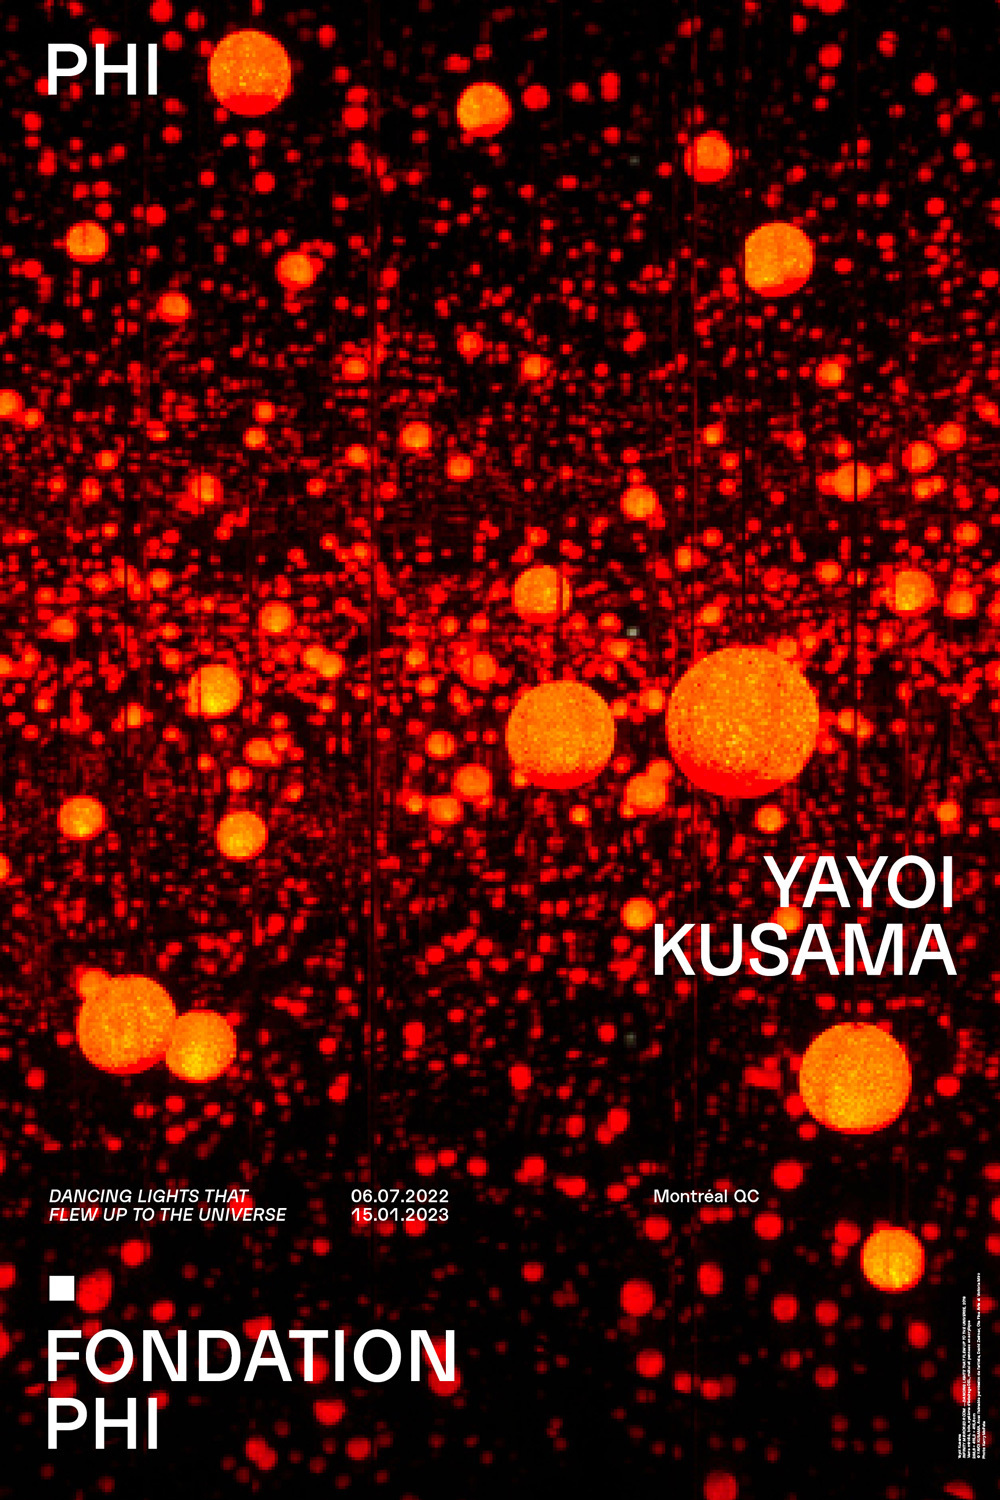 PHI Fondation Yayoi Kusama Poster 4